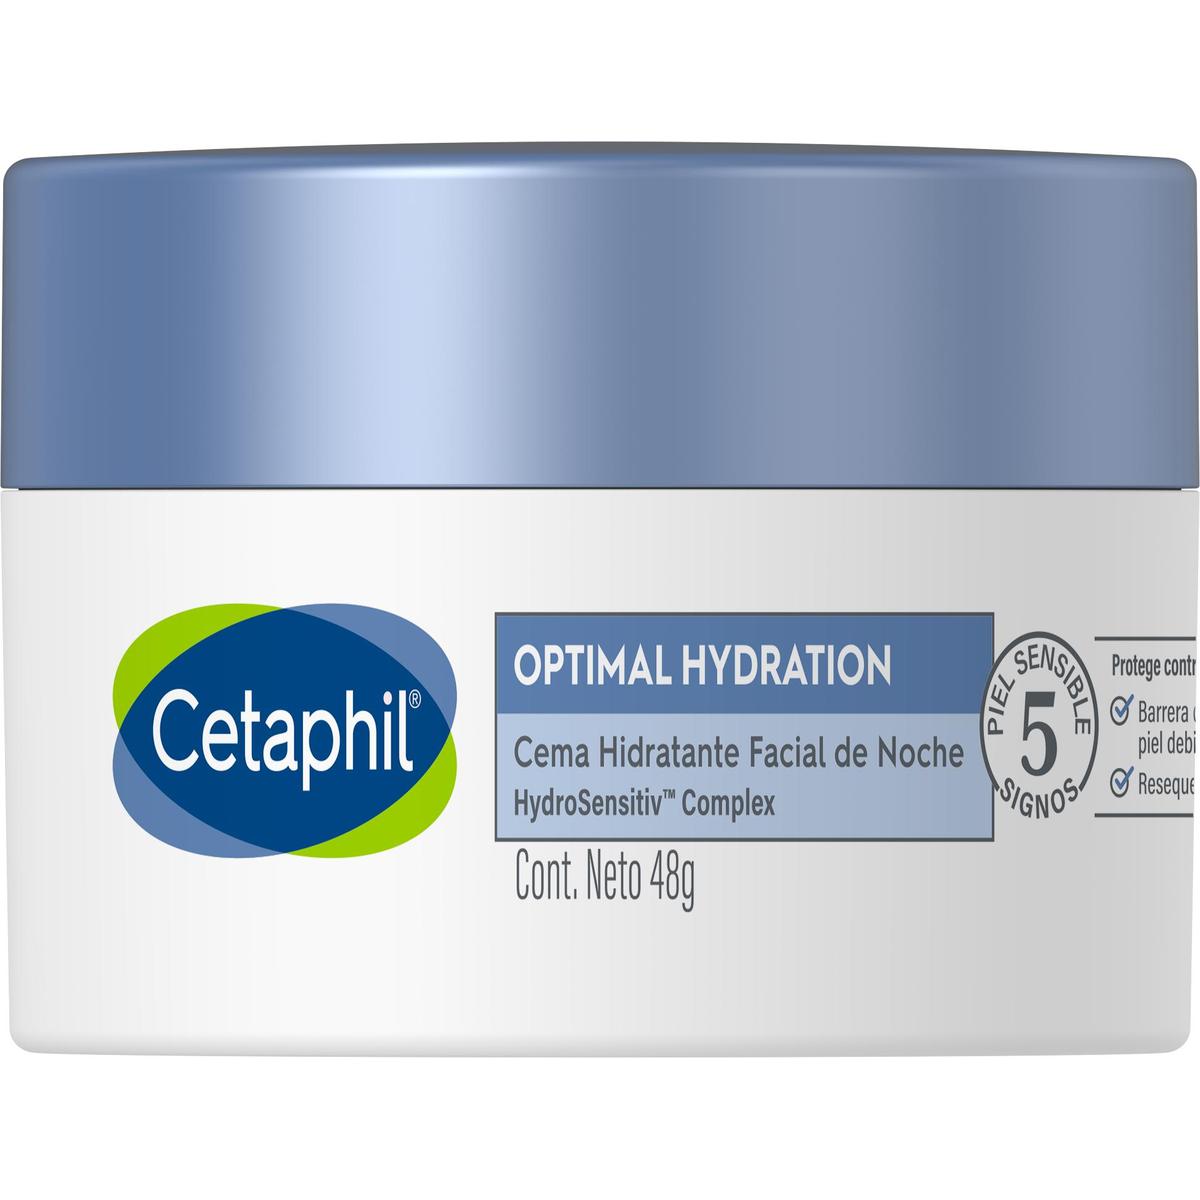 Cetaphil Optimal Hydration, Crema hidratante facial de noche, 48gr